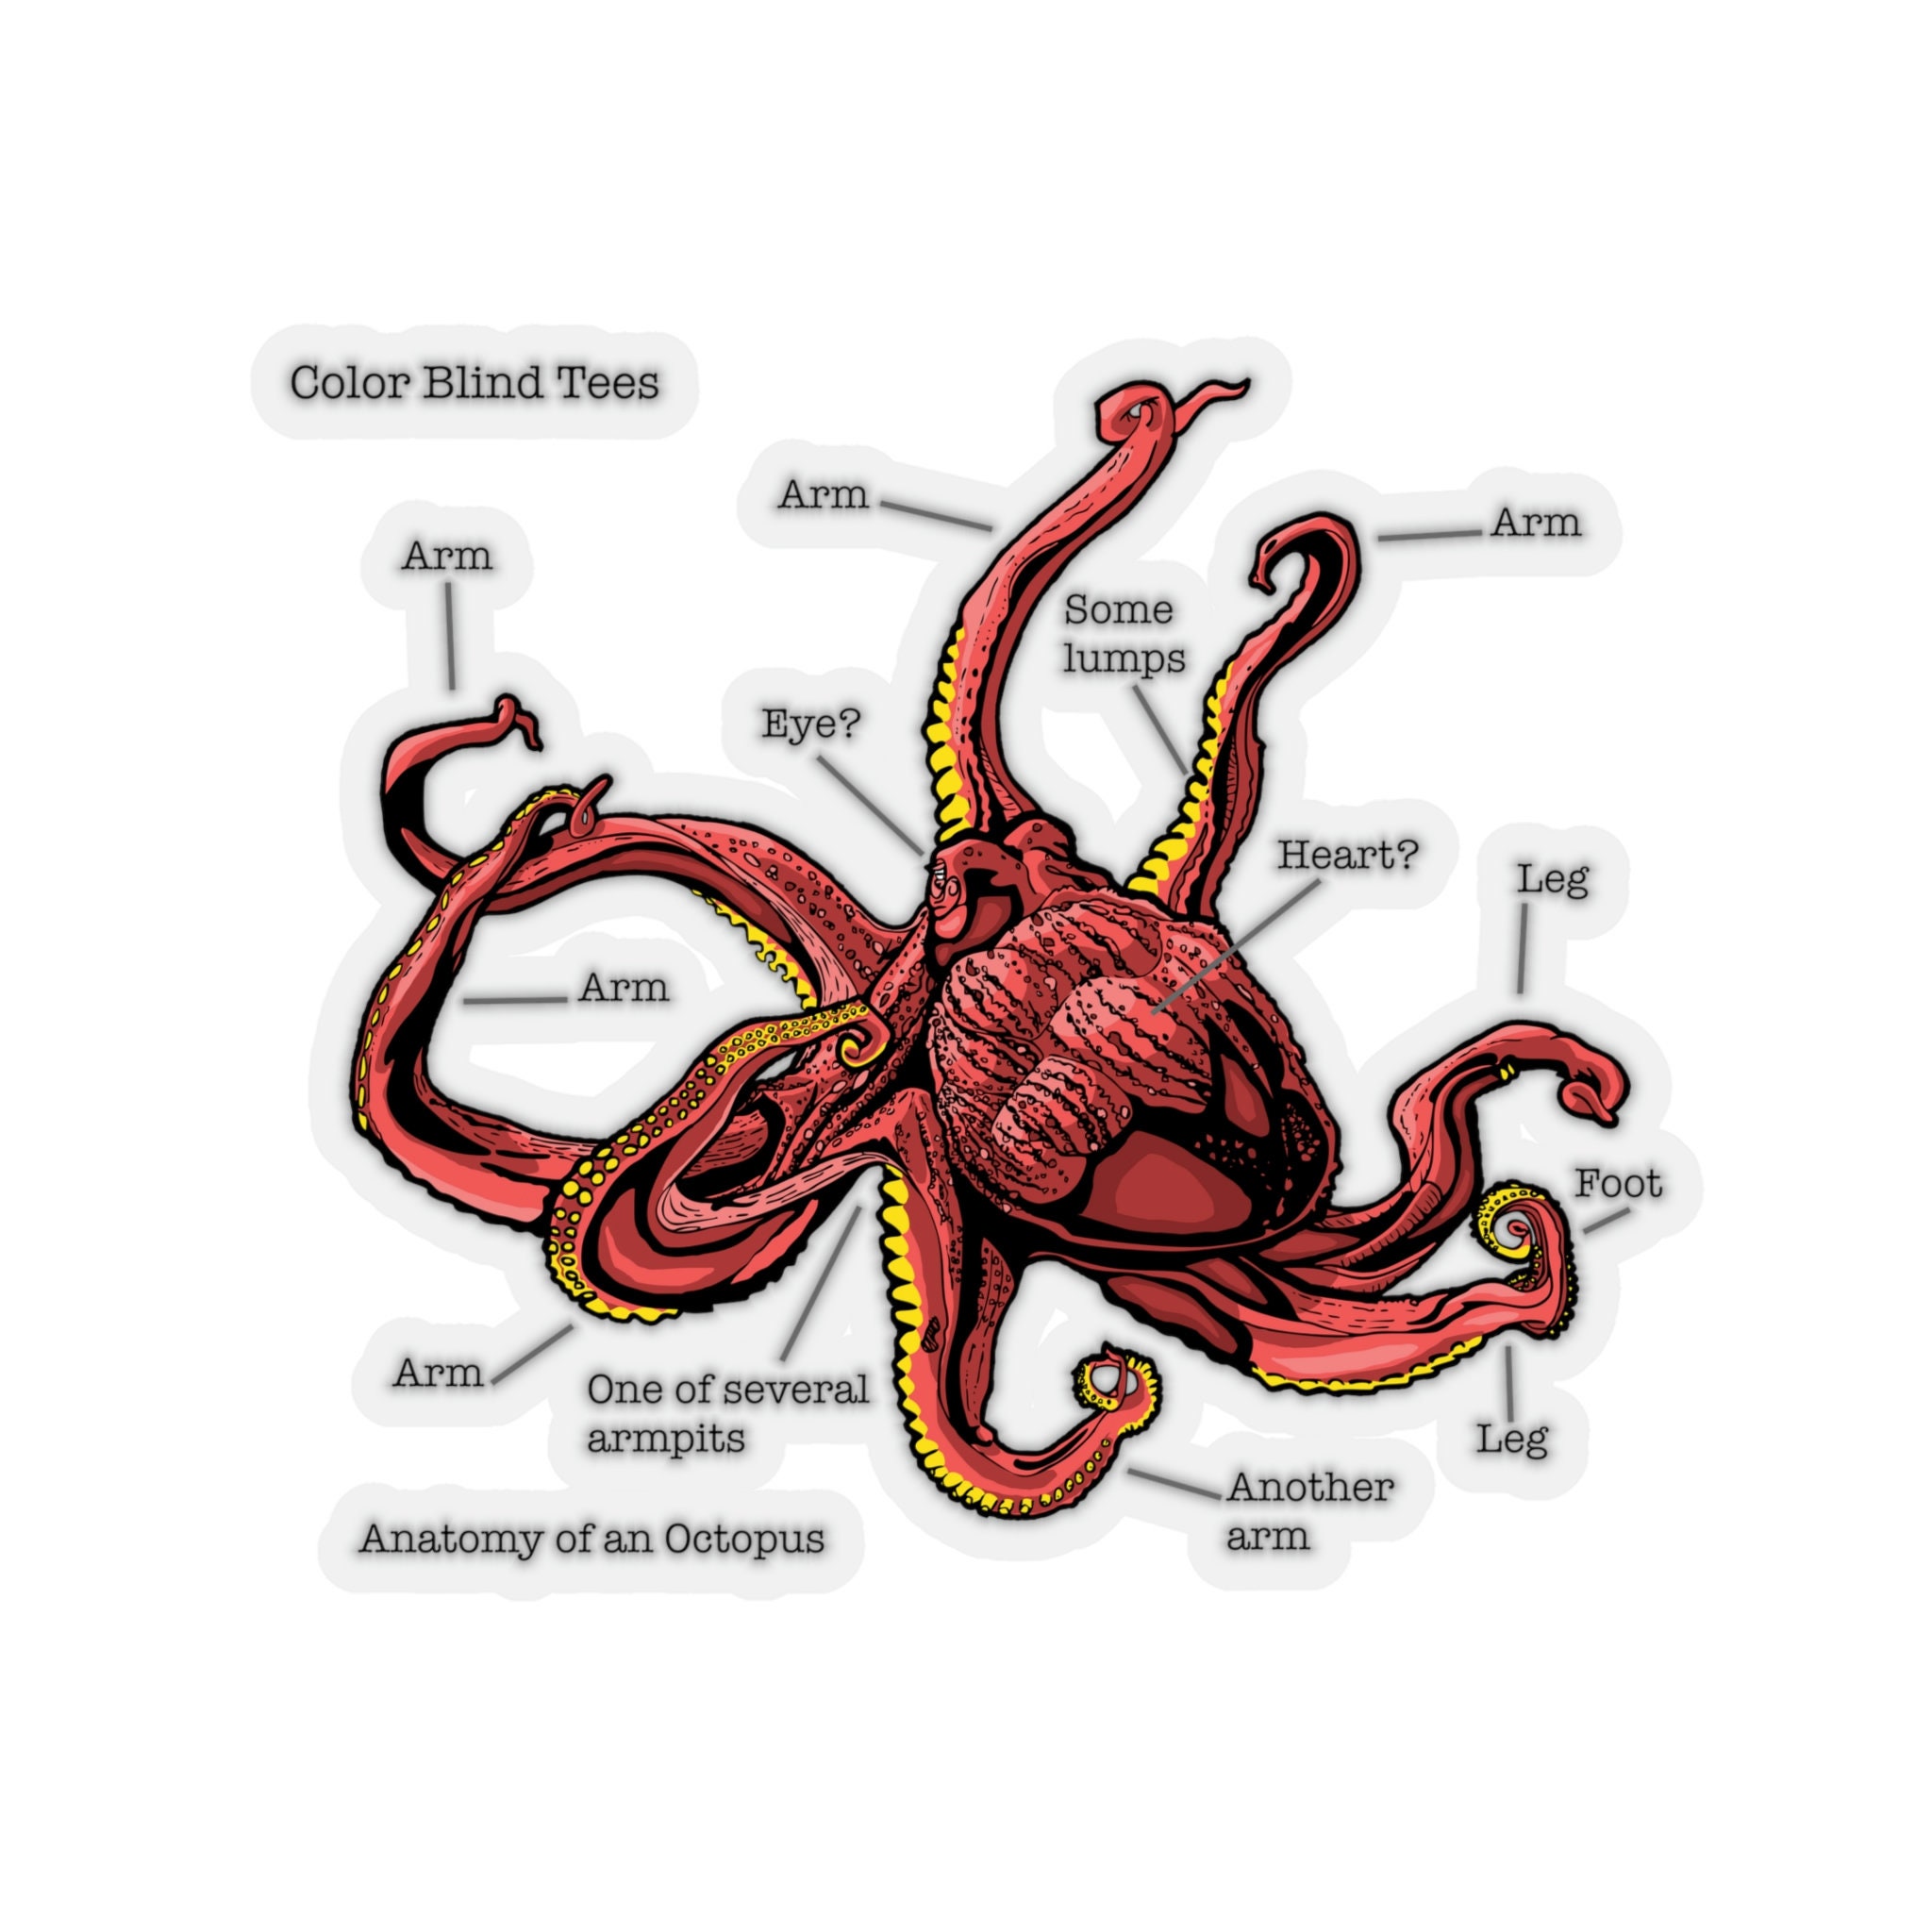 Octopus anatomie